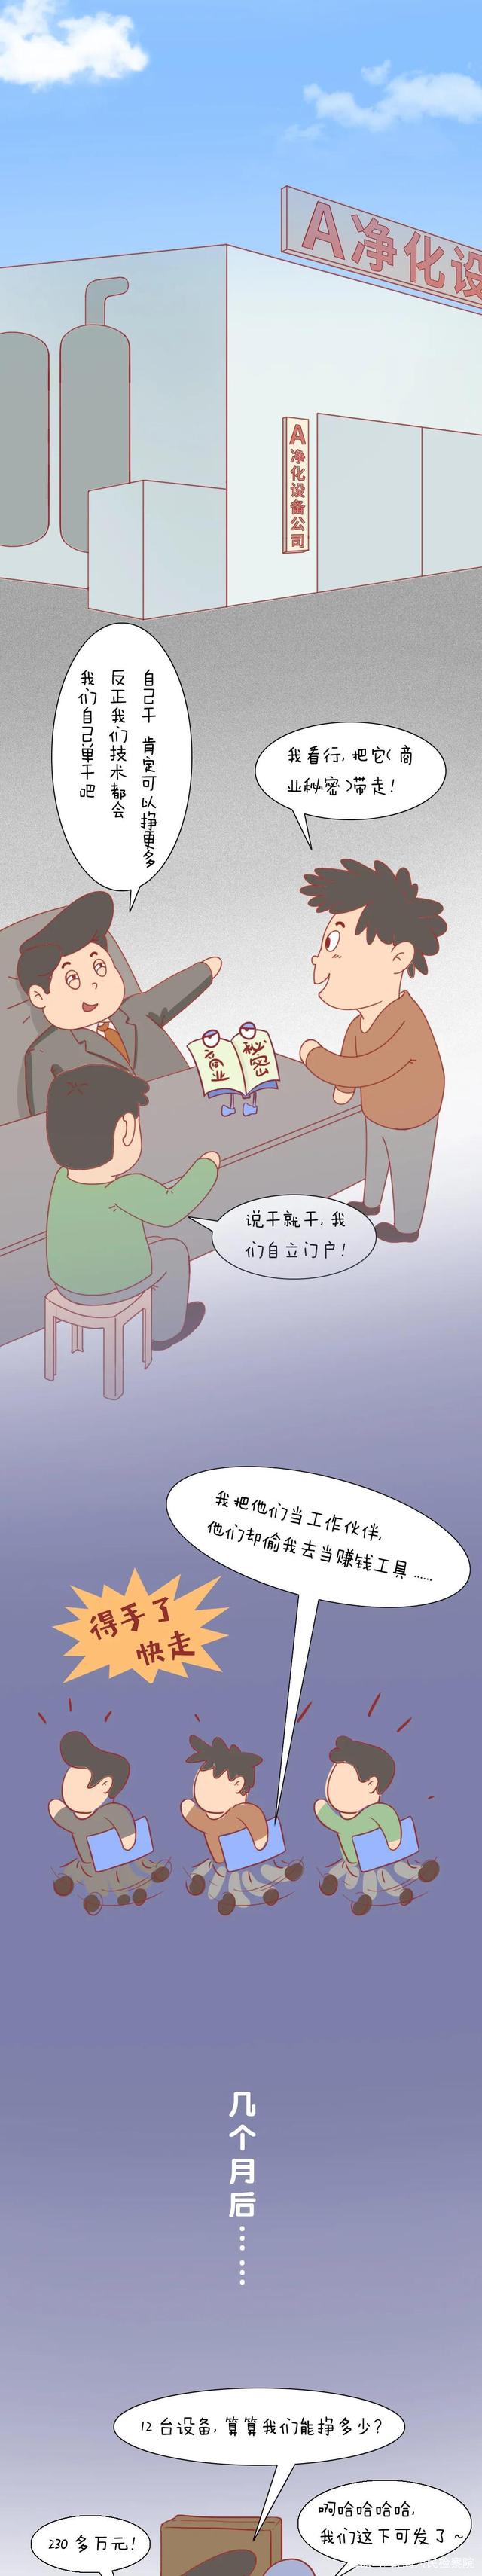 世界知识产权日【普法漫画】